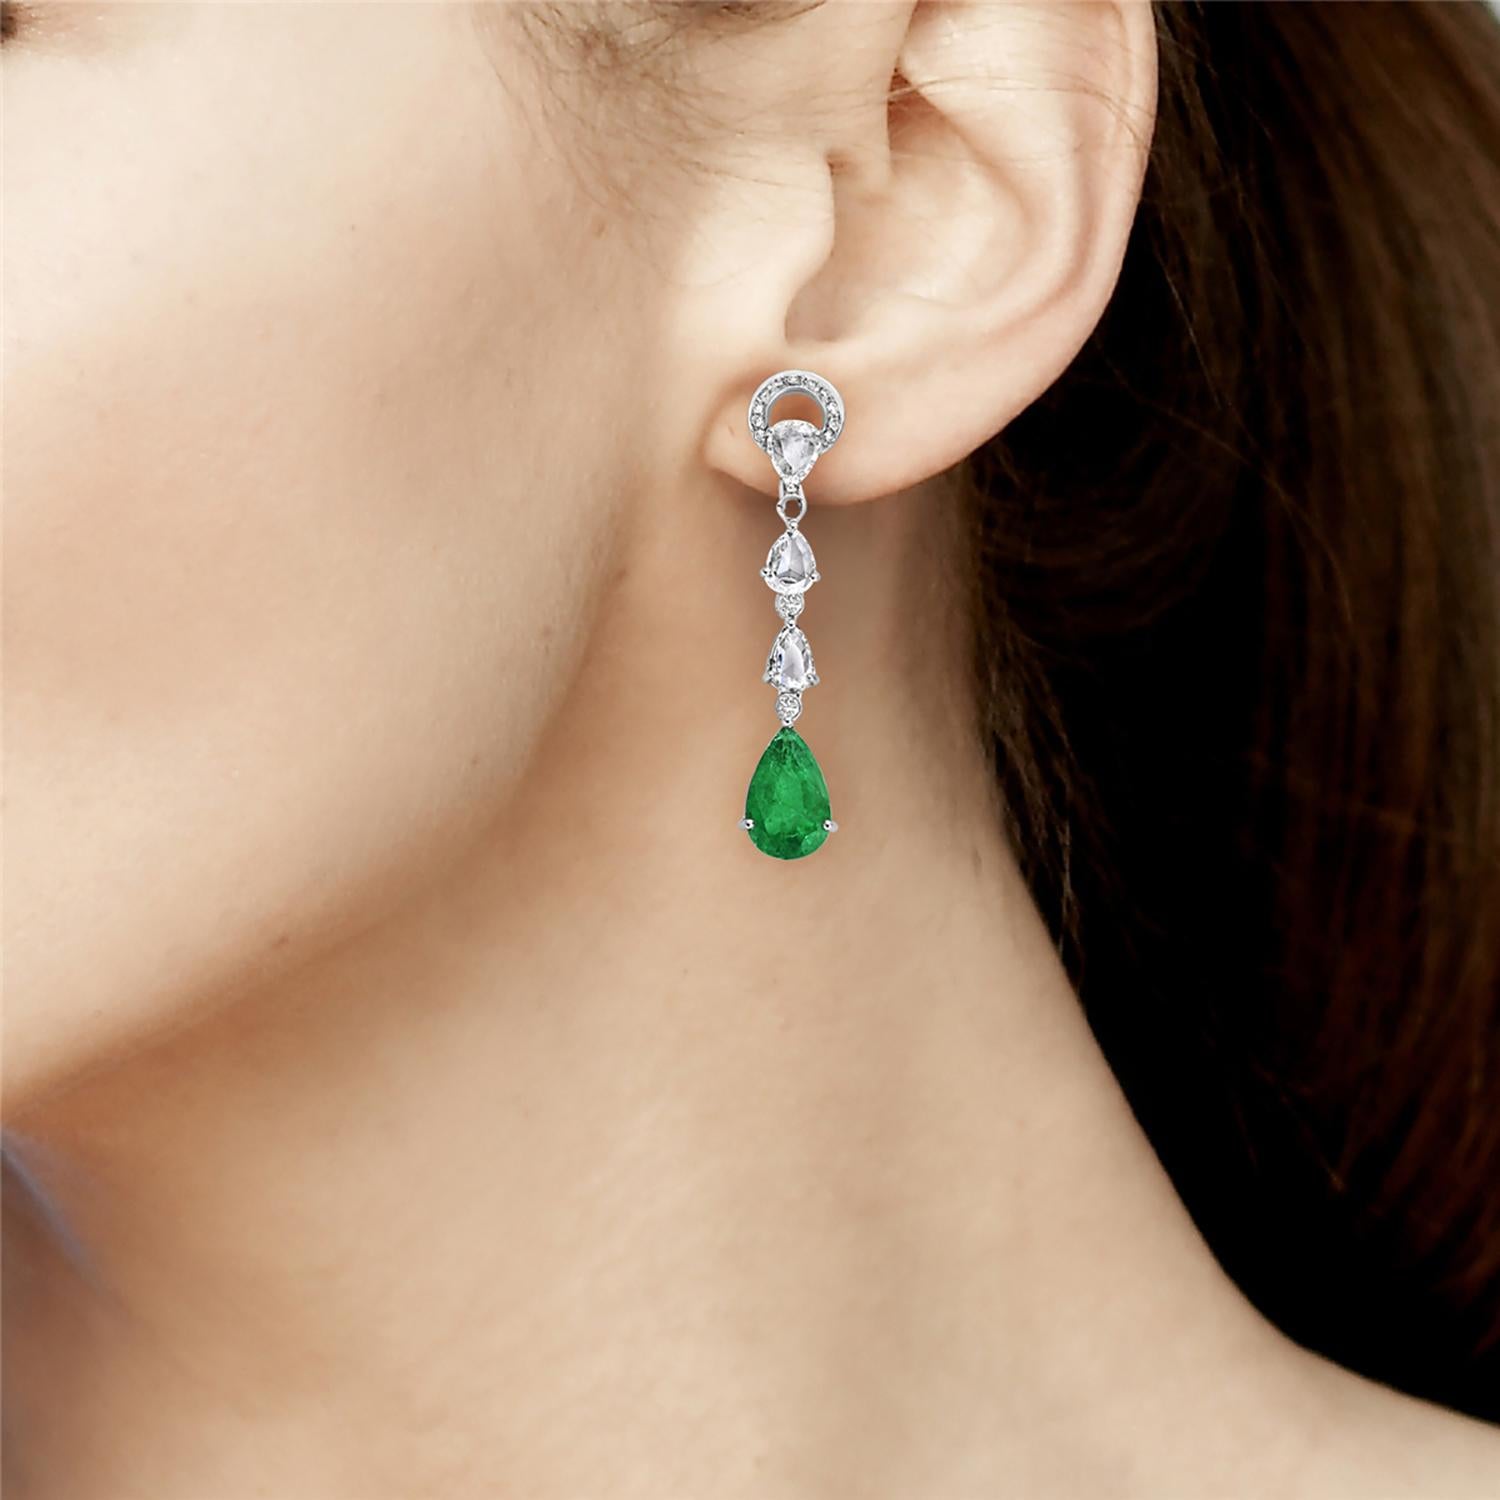 Verleihen Sie Ihrem Outfit einen Hauch von Eleganz mit diesen atemberaubenden tropfenförmigen Smaragd-Ohrringen. Diese langen Ohrringe eignen sich perfekt für besondere Anlässe oder als luxuriöse Ergänzung zu Ihrem Alltagsstil. Diese Ohrringe sind